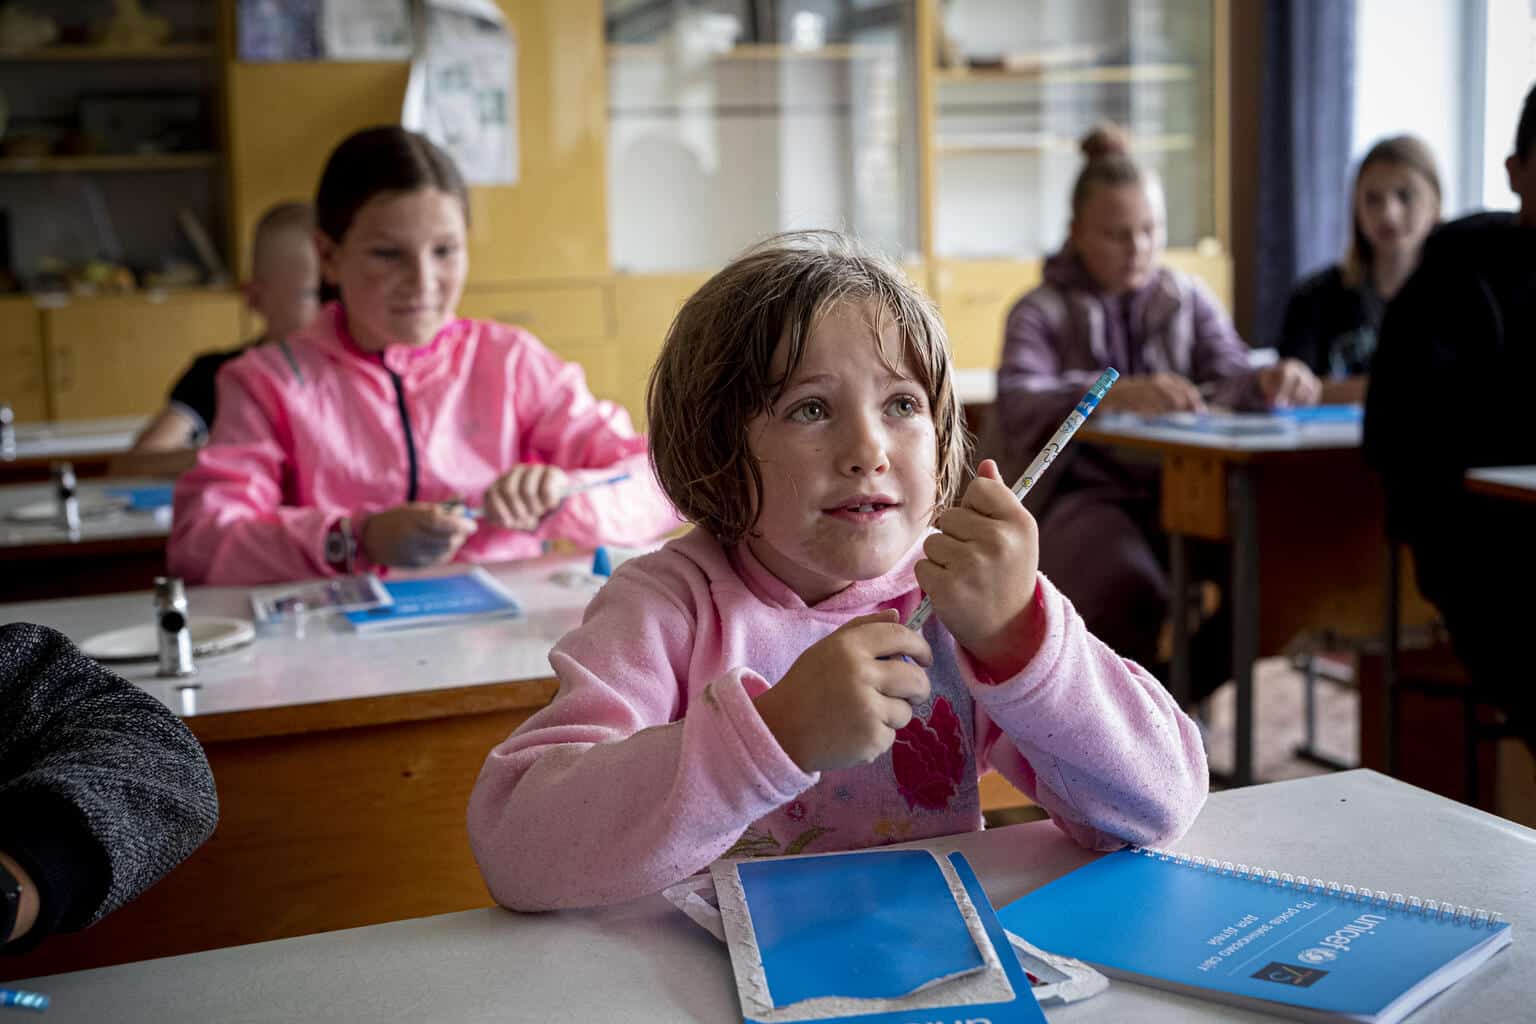 Le 13 août 2022, des enfants sont assis dans une salle de classe de leur école dans le village d'Olyzarivka, en Ukraine. © UNICEF/UN0689688/Gilbertson - Highway Child